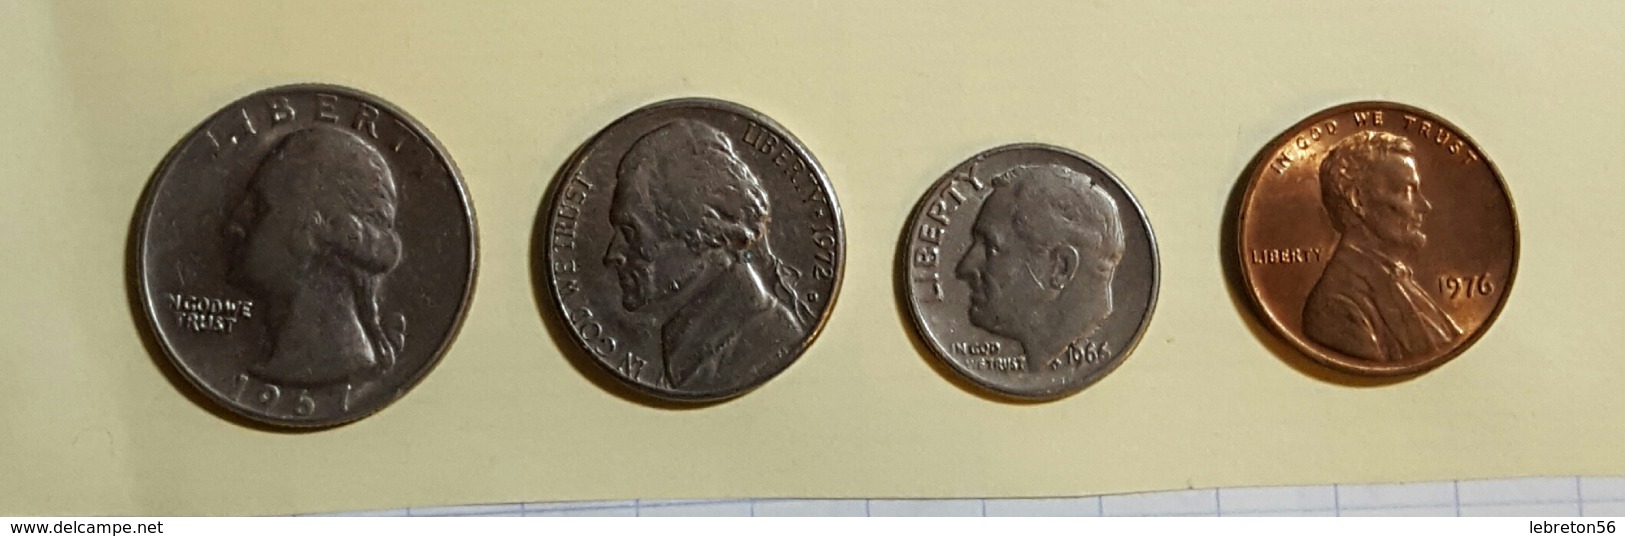 Etats Unis Quater Dollards 1967 Five Cent 1972 One Dime 1966 On Cent1976 Voir Les Deux Photos - Lots & Kiloware - Coins